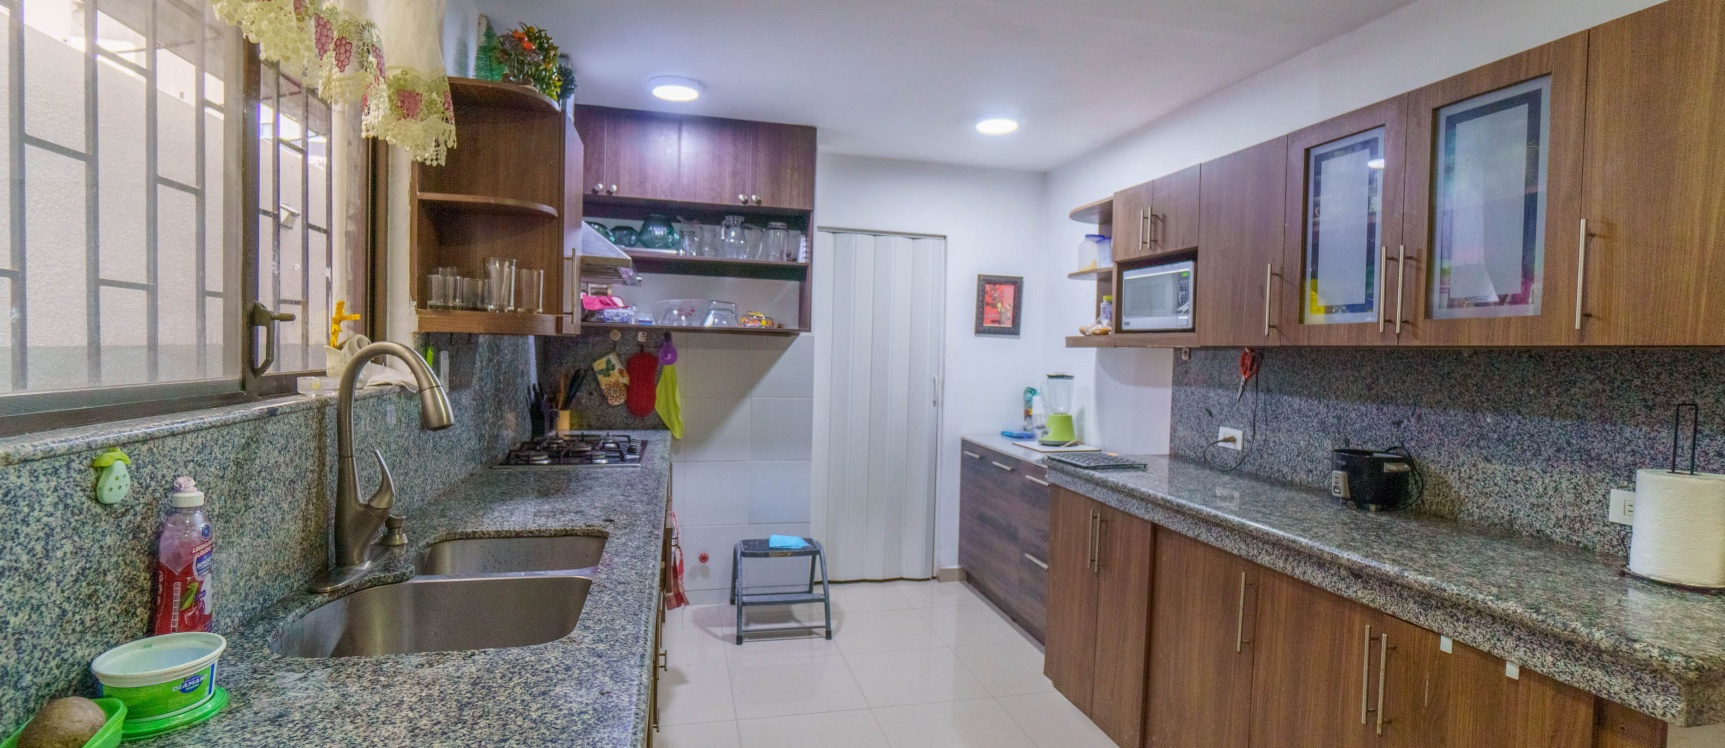 GeoBienes - Departamento planta baja en venta ubicado en Lomas de Urdesa, Norte de Guayaquil - Plusvalia Guayaquil Casas de venta y alquiler Inmobiliaria Ecuador